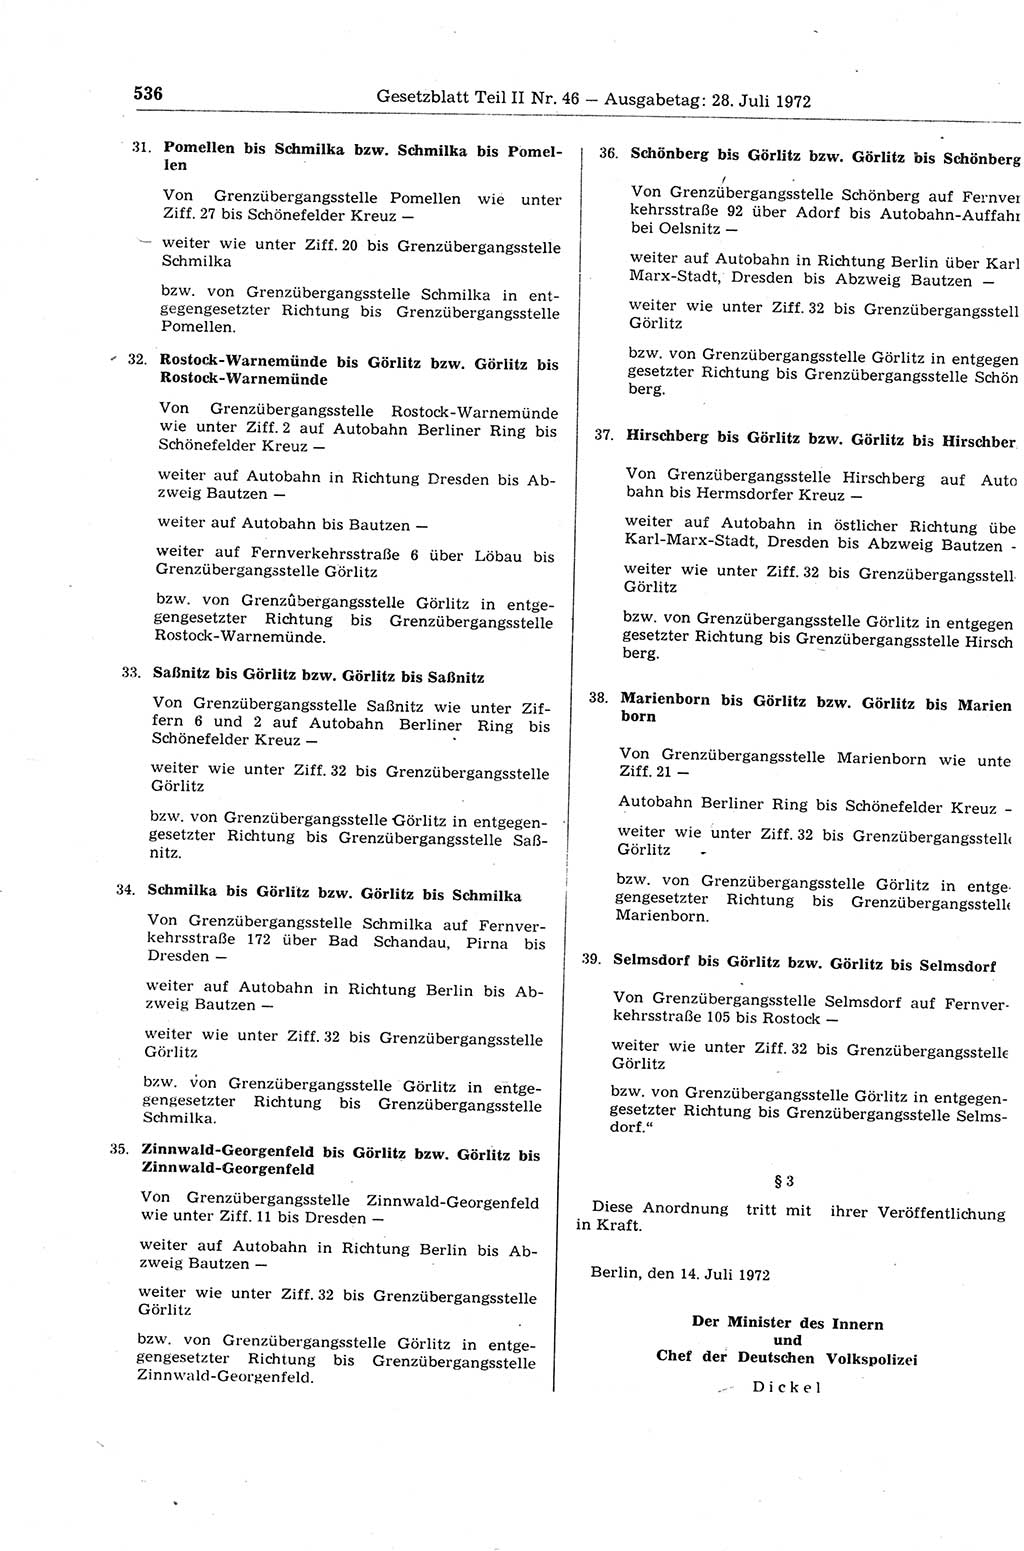 Gesetzblatt (GBl.) der Deutschen Demokratischen Republik (DDR) Teil ⅠⅠ 1972, Seite 536 (GBl. DDR ⅠⅠ 1972, S. 536)